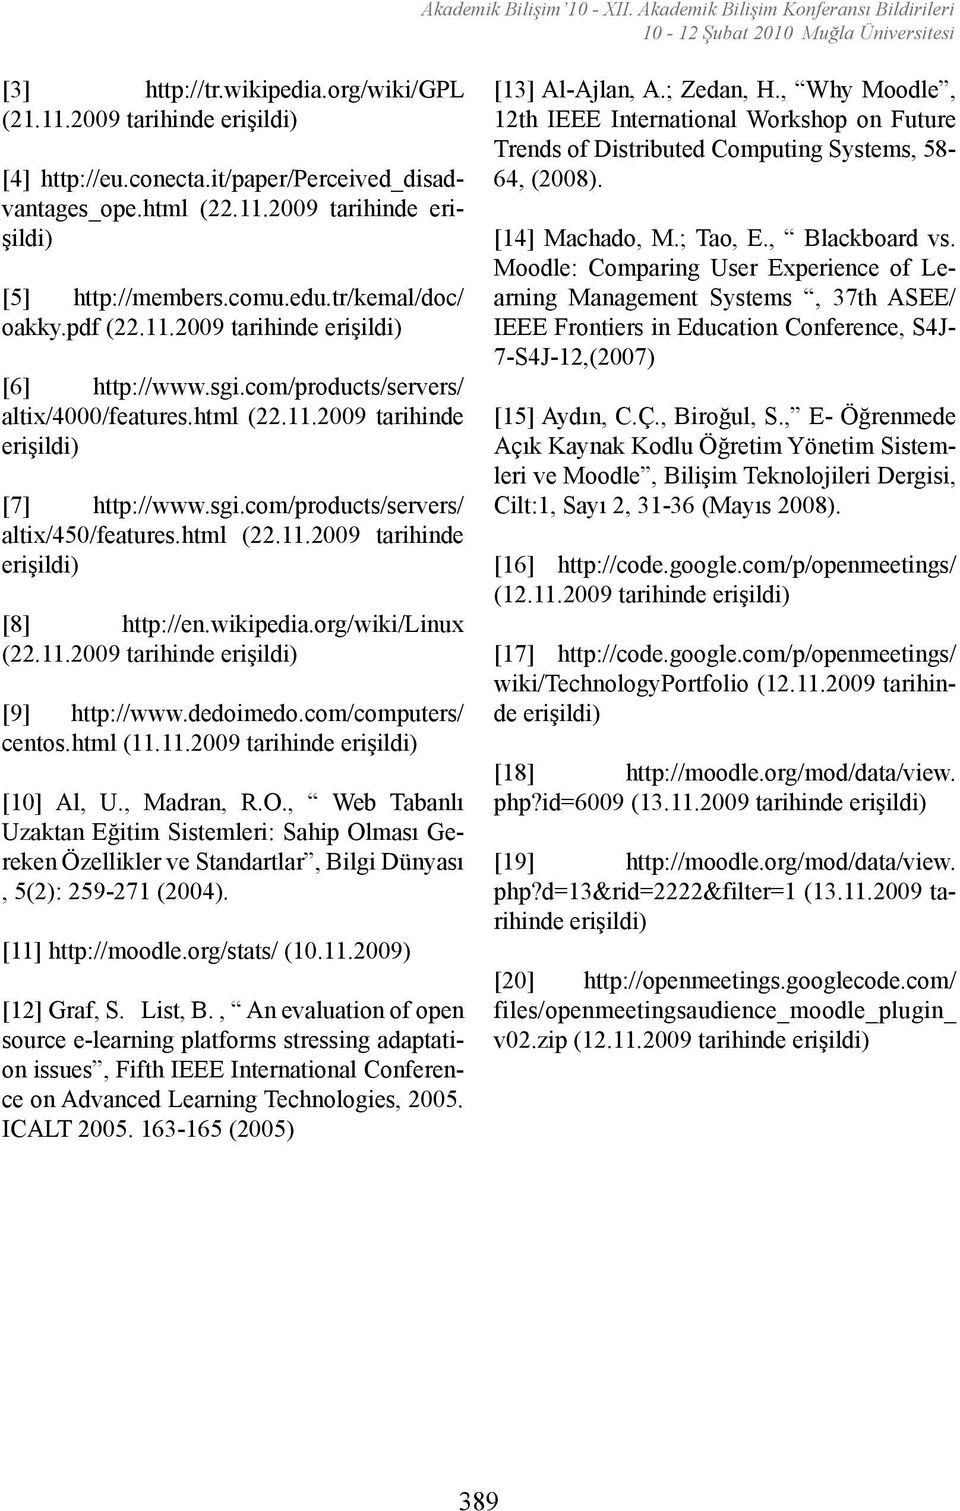 html (22.11.2009 tarihinde [8] http://en.wikipedia.org/wiki/linux (22.11.2009 tarihinde [9] http://www.dedoimedo.com/computers/ centos.html (11.11.2009 tarihinde [10] Al, U., Madran, R.O.